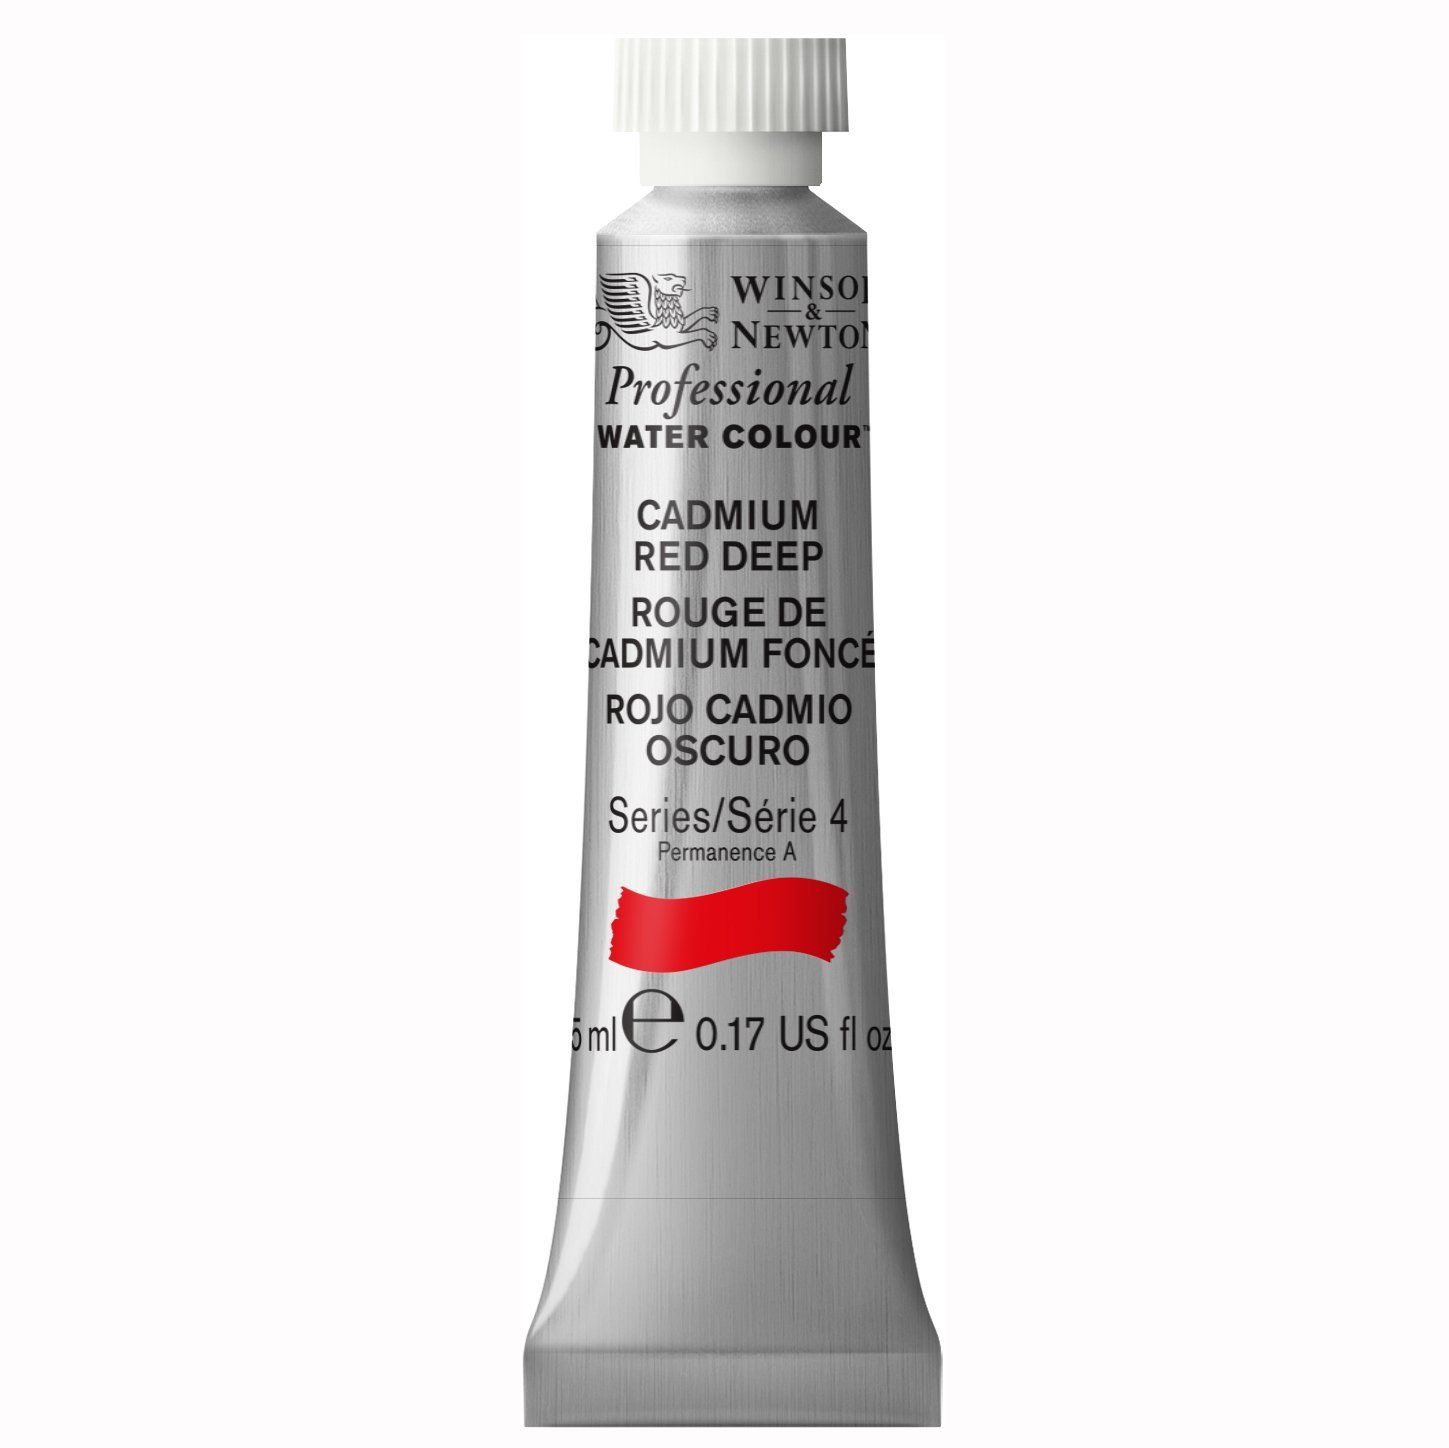 Winsor & Newton Watercolour Paint - Cadmium Red Deep 5ml